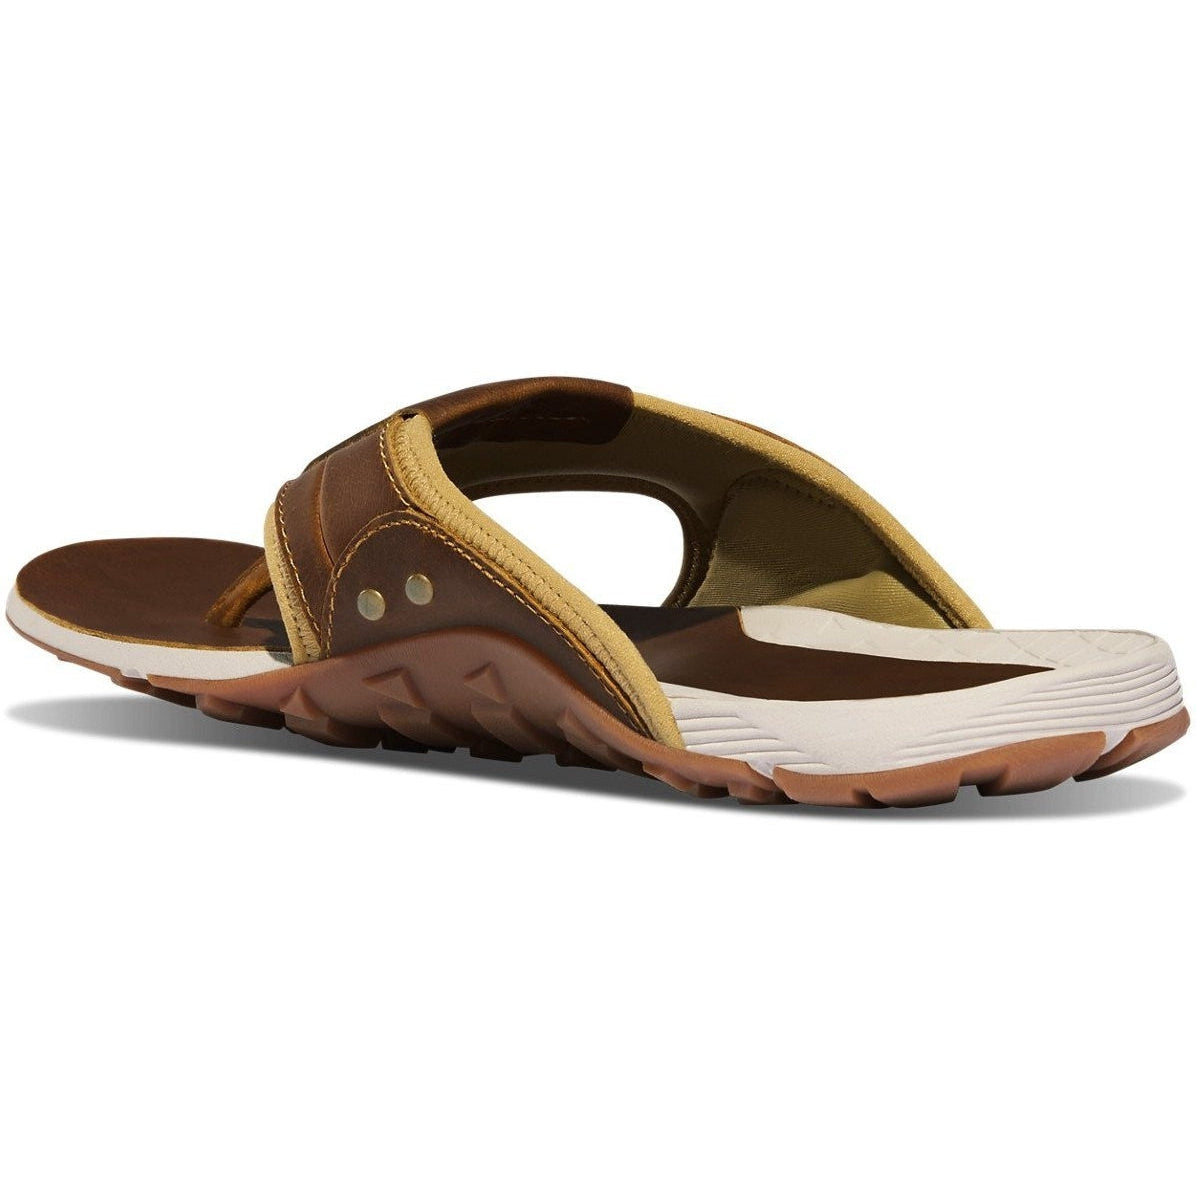 Danner Men's Lost Coast Sandal - Sand Dune - 68133  - Overlook Boots